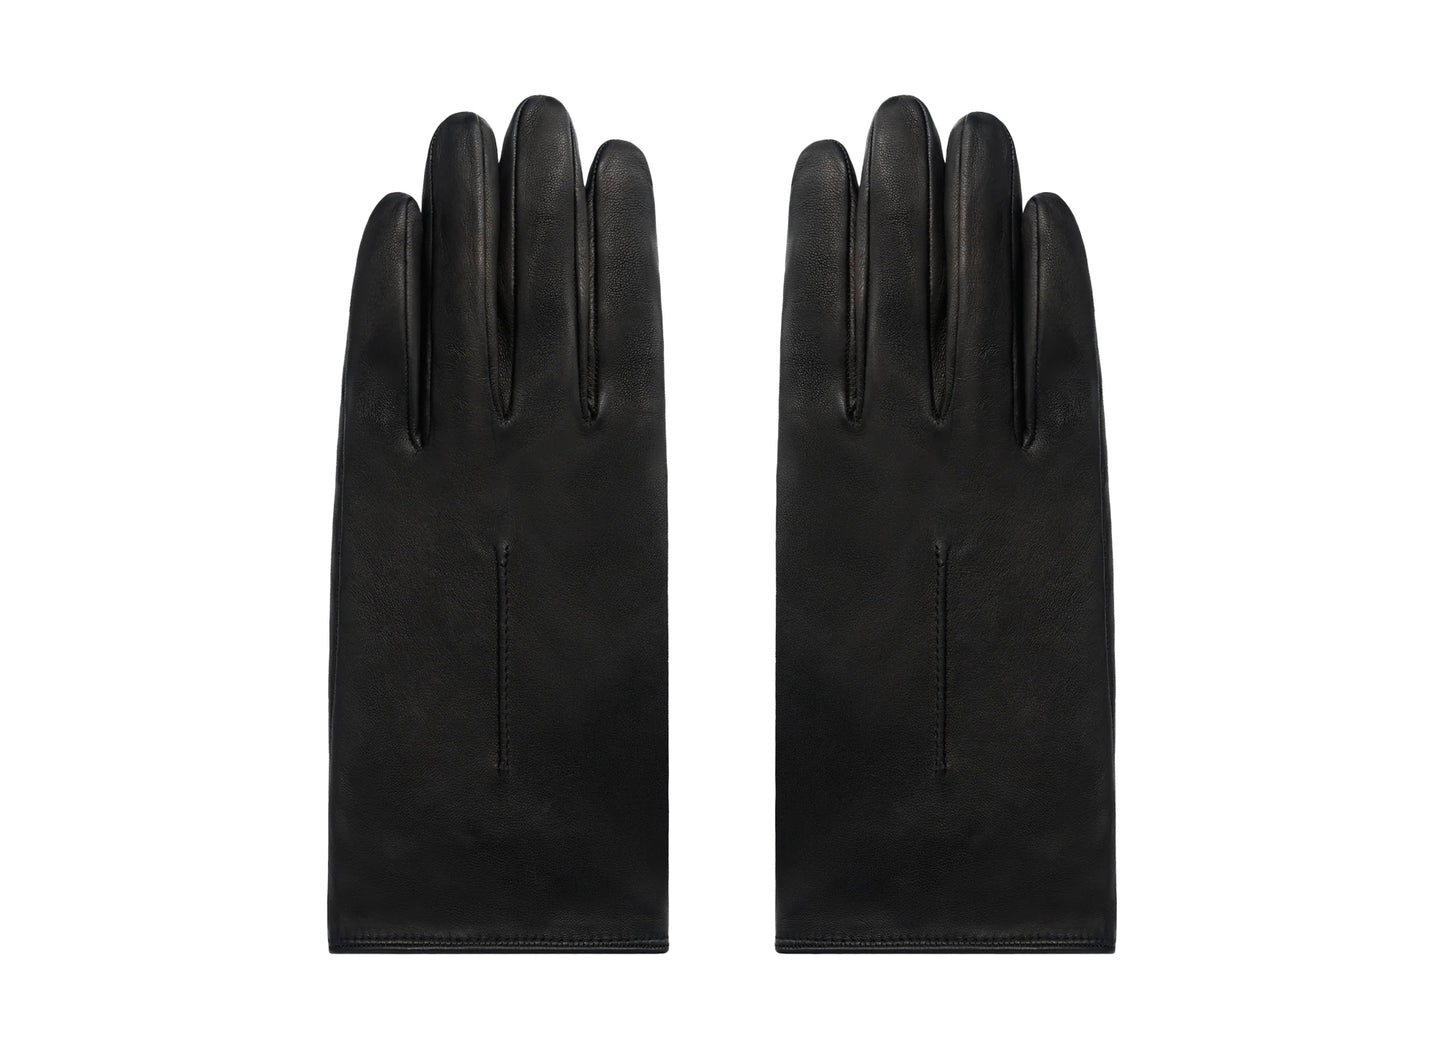 Fear of God Eternal Gloves in Black